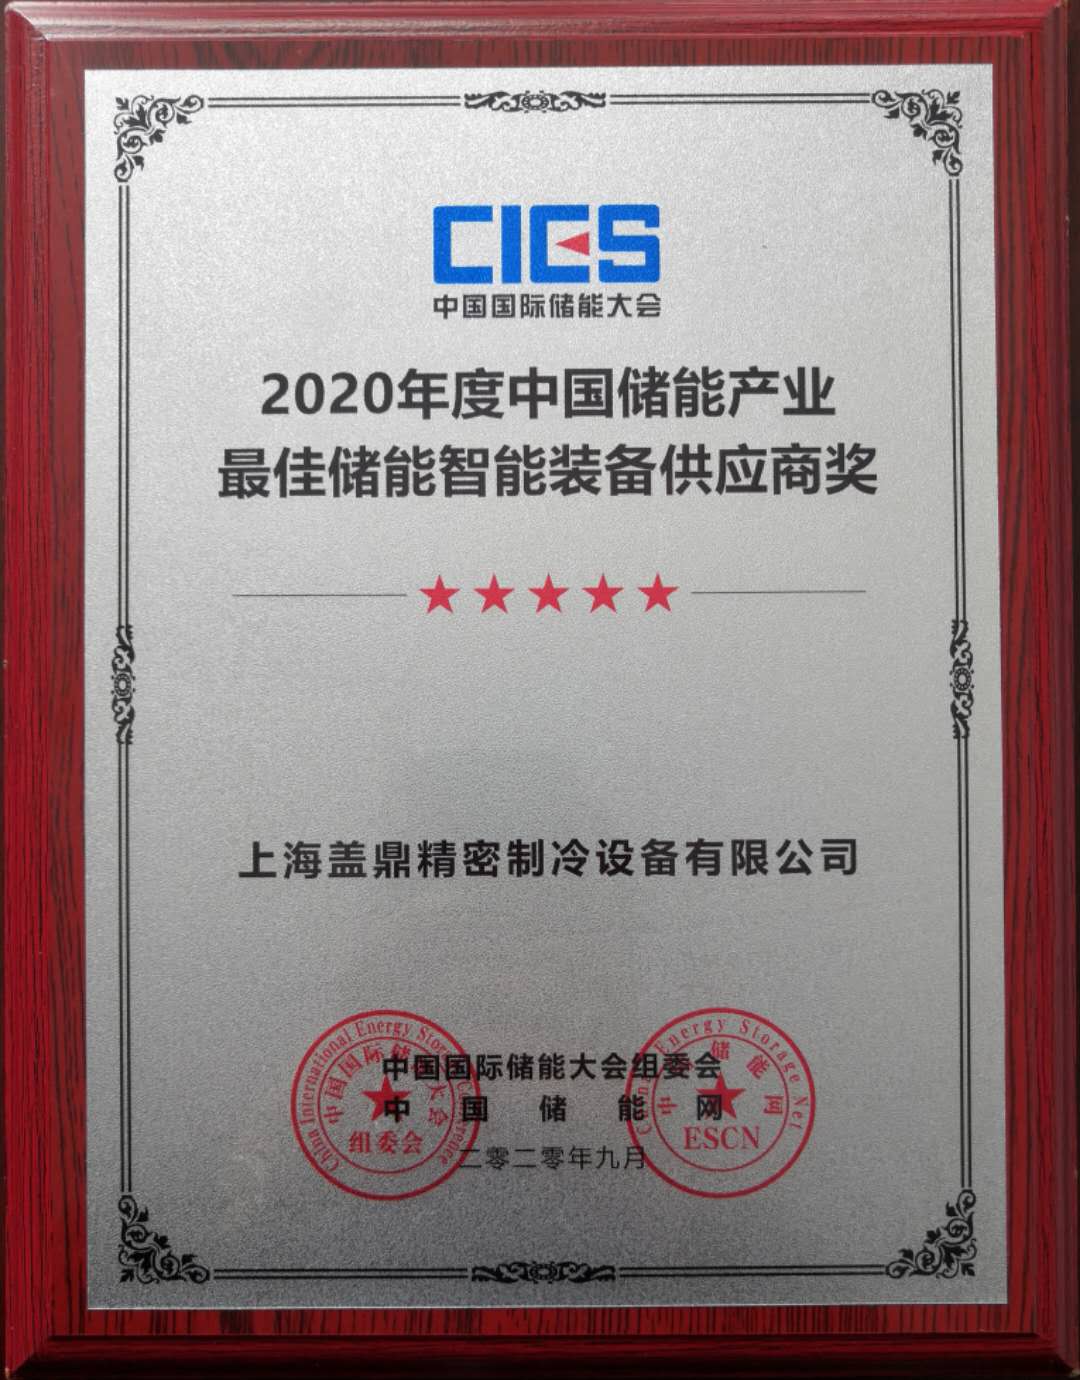 盖鼎制冷荣获“2020年度中国储能产业最佳储能智能装备供应商”